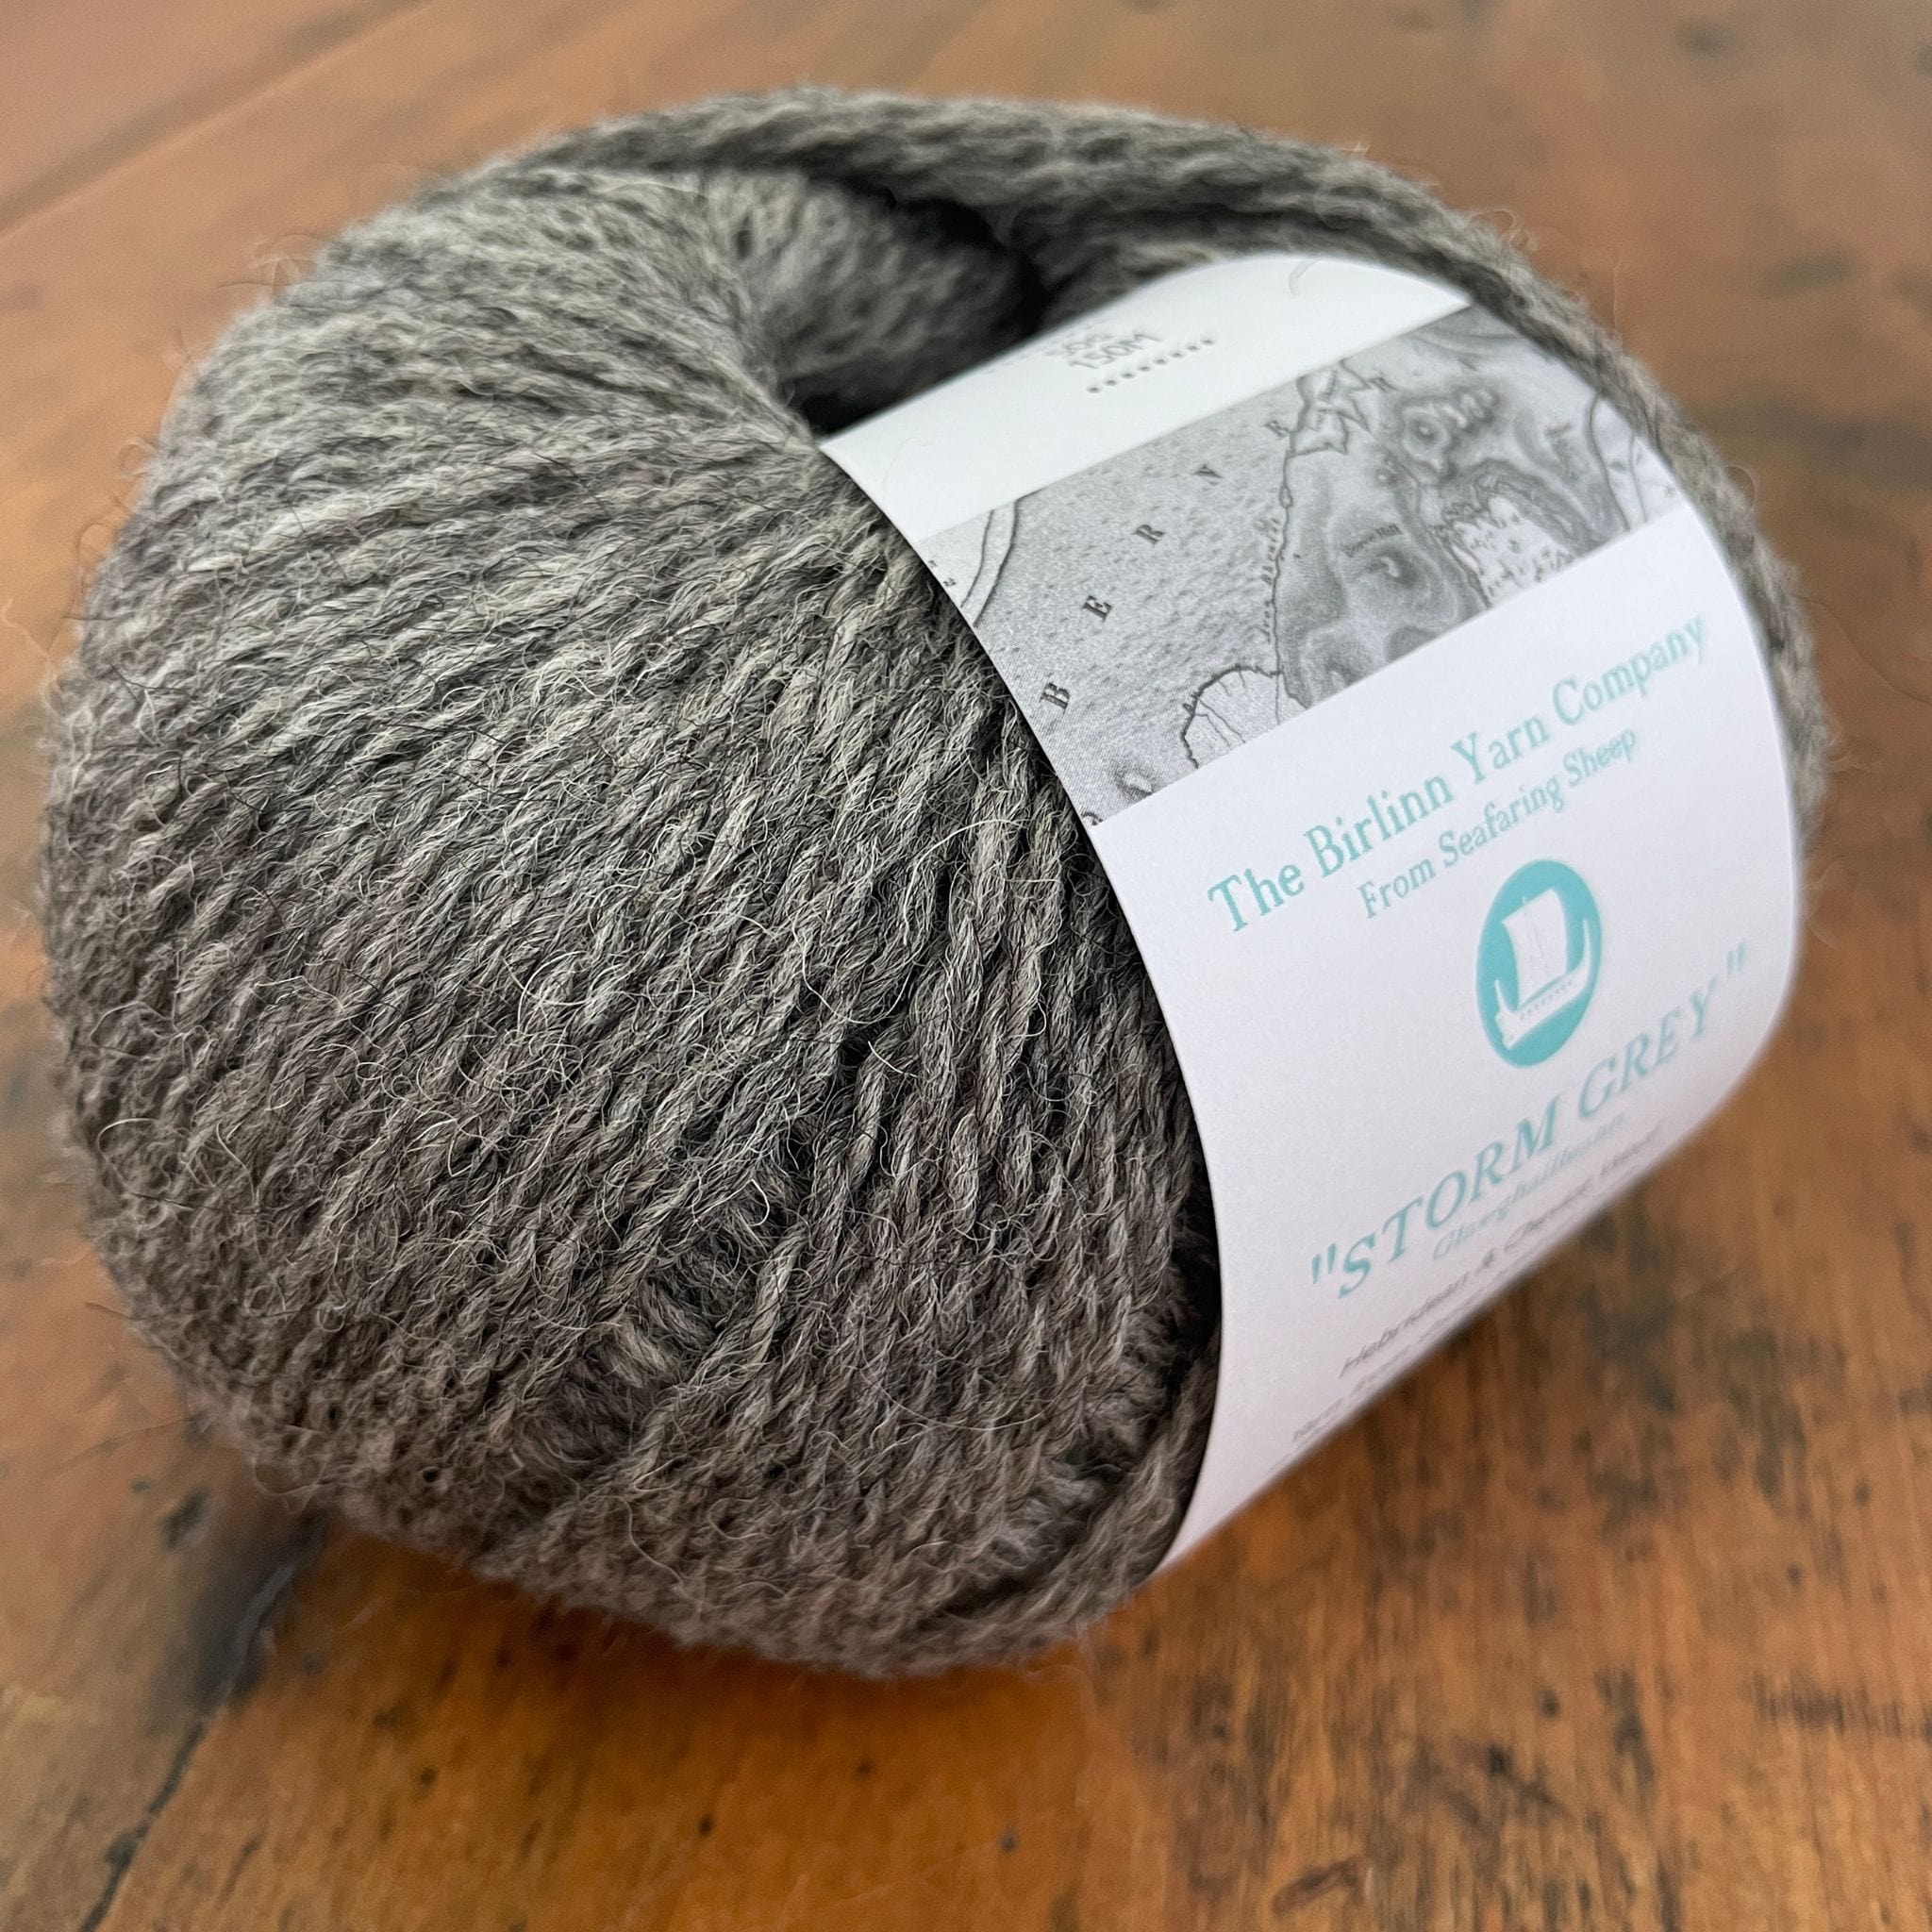 Birlinn Yarn Company Hebridean 4ply yarns shown in Storm Grey (medium grey) 